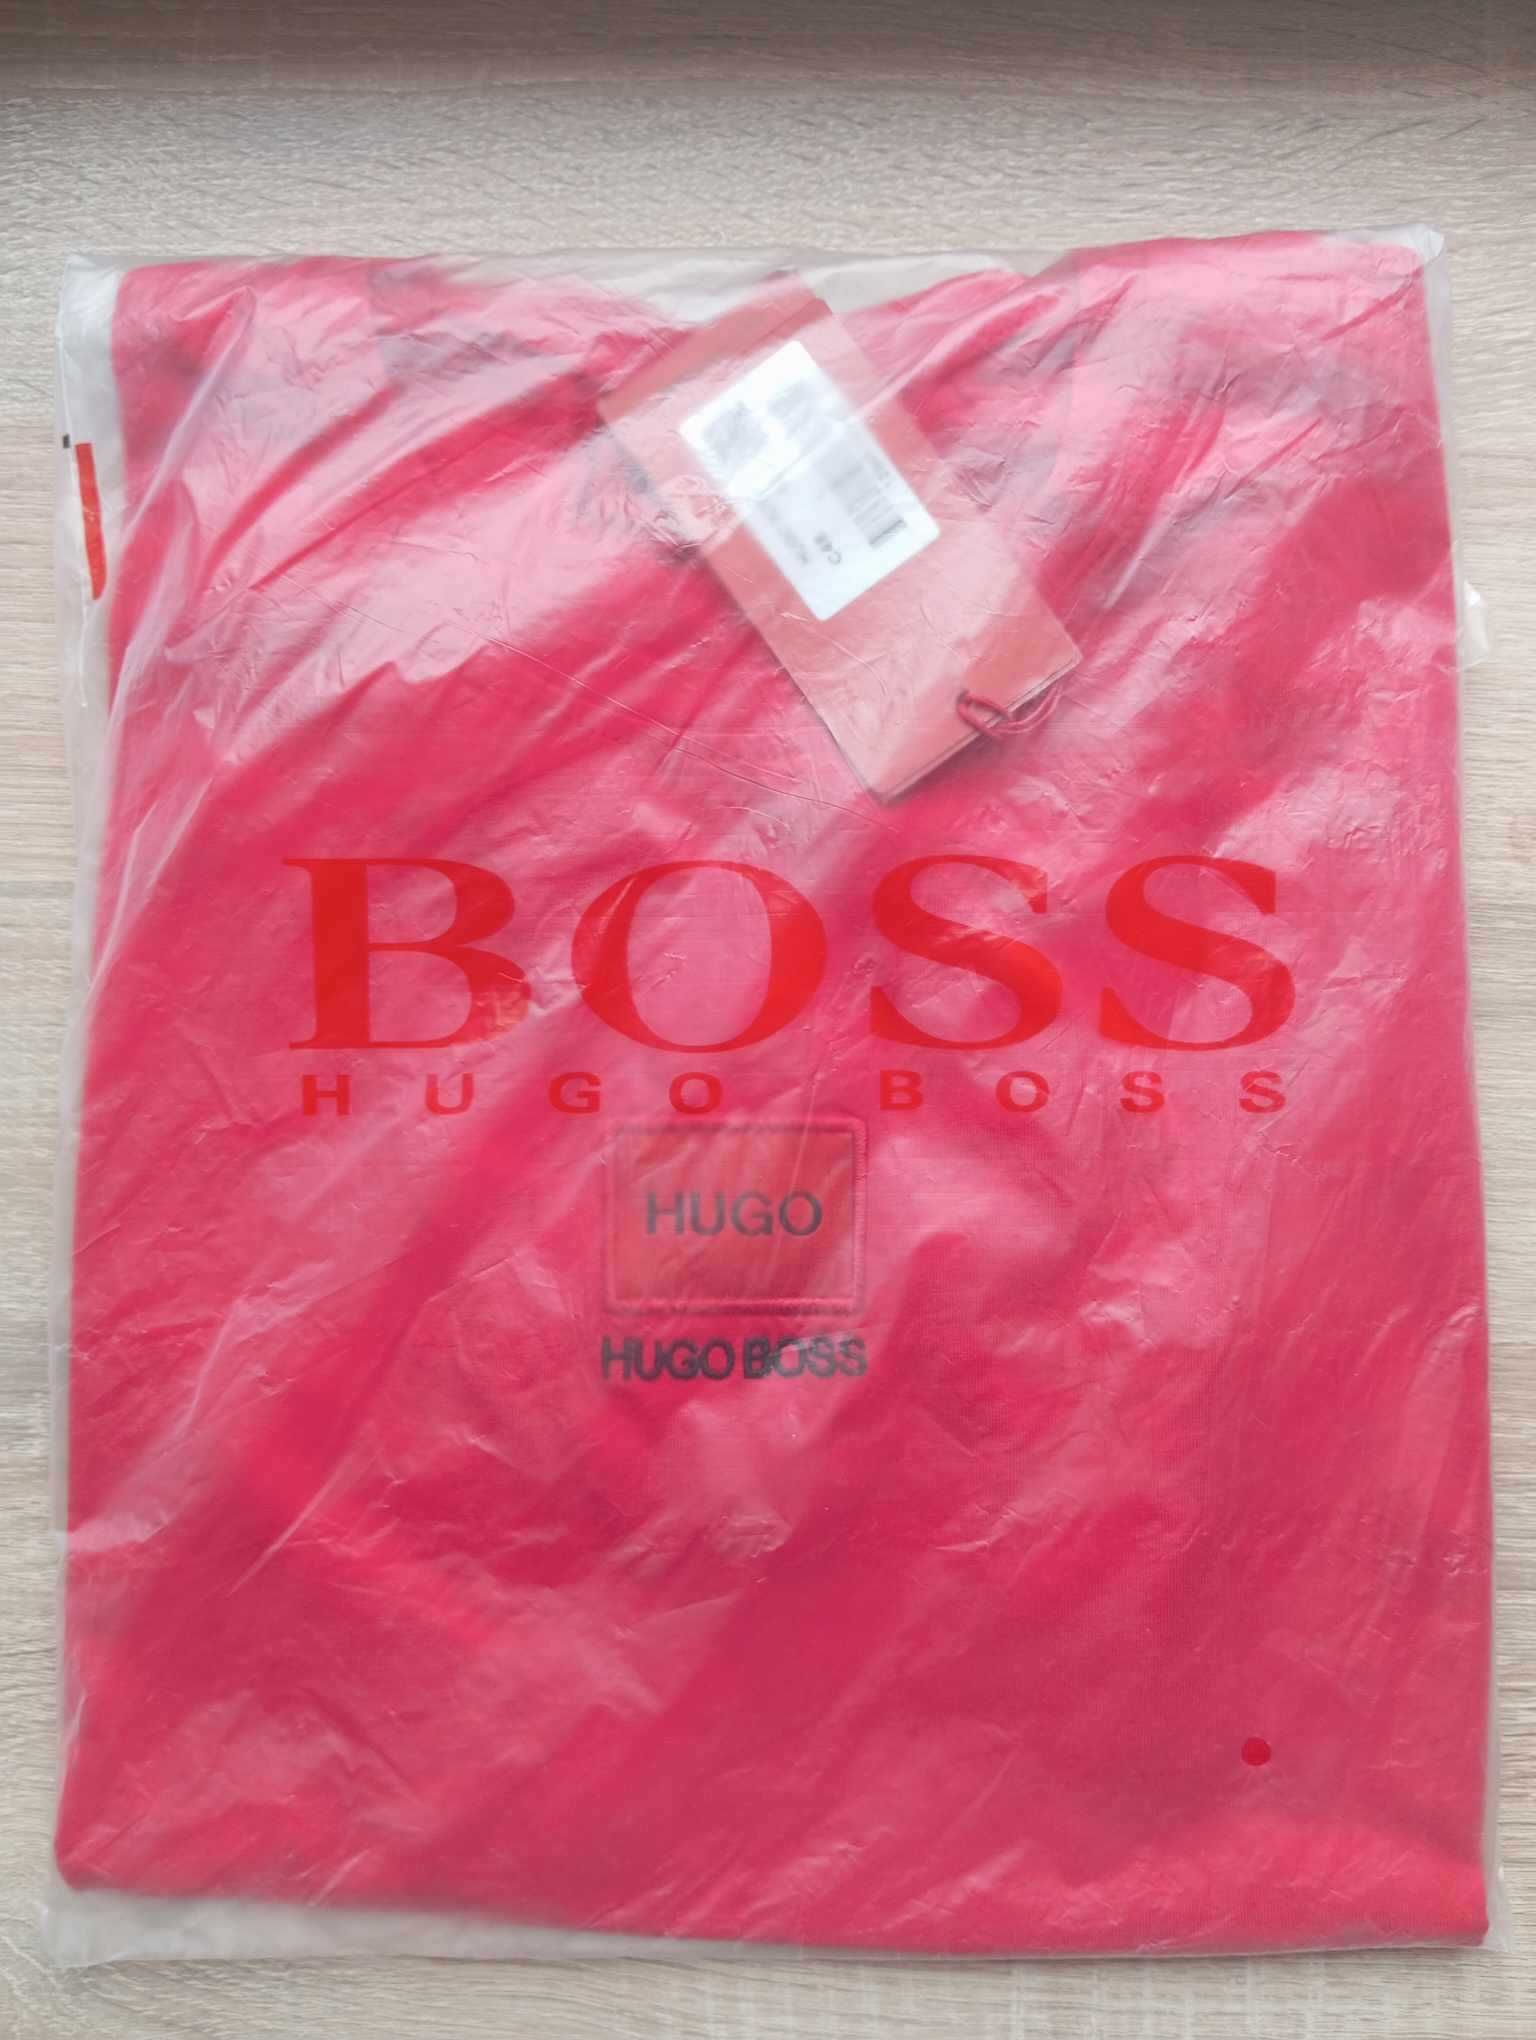 Koszulka Hugo Boss, t-shirt classic czerwony L, nowość!